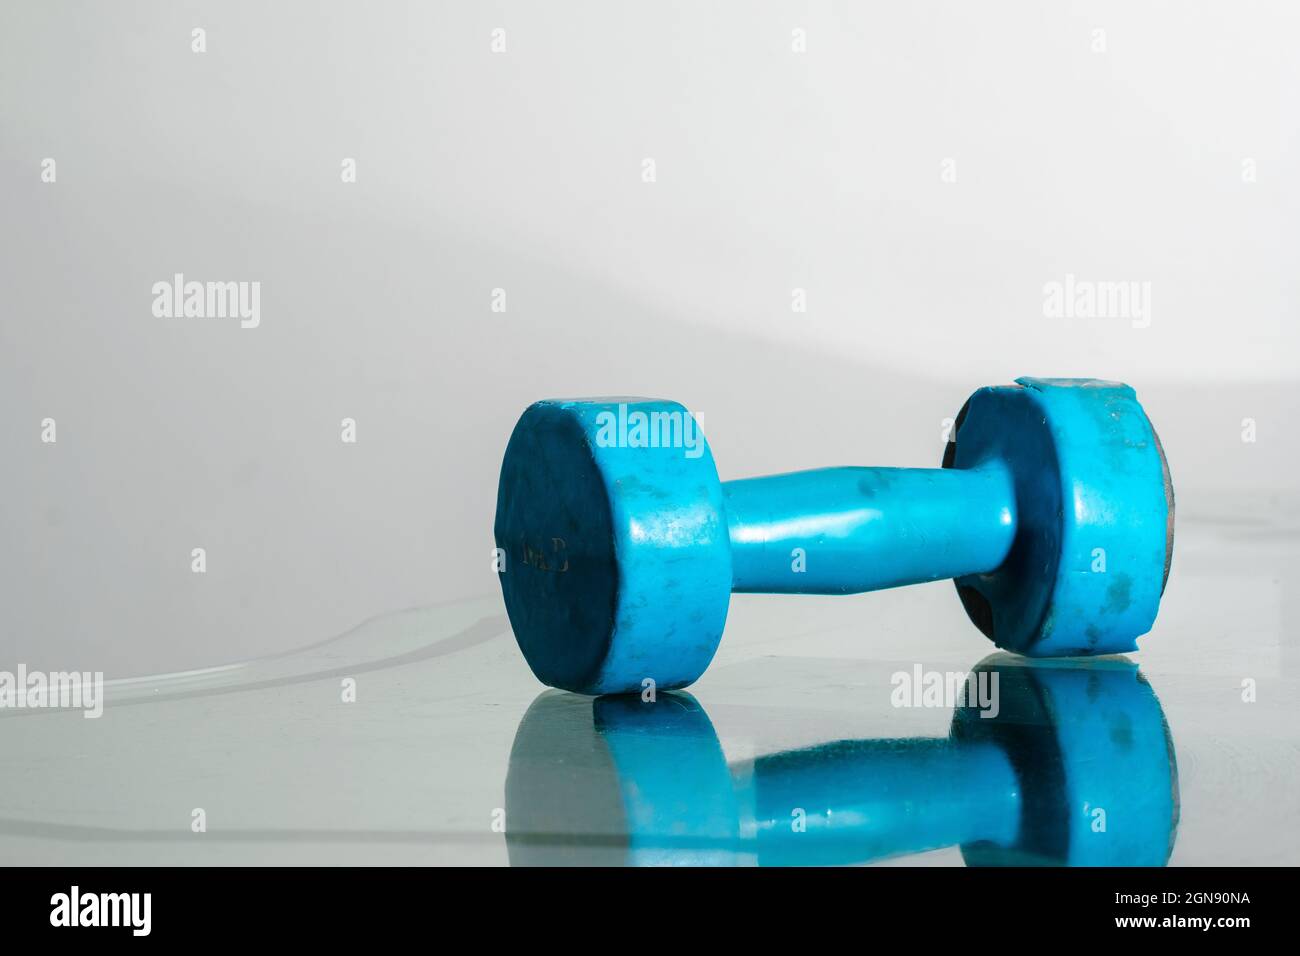 Blaue Kurzhantel (gebraucht, rostig) auf reflektierendem Glas und weißem Hintergrund, Platz für Text. Bewegungs- und Gesundheitskonzept. Fitnesskonzept Stockfoto